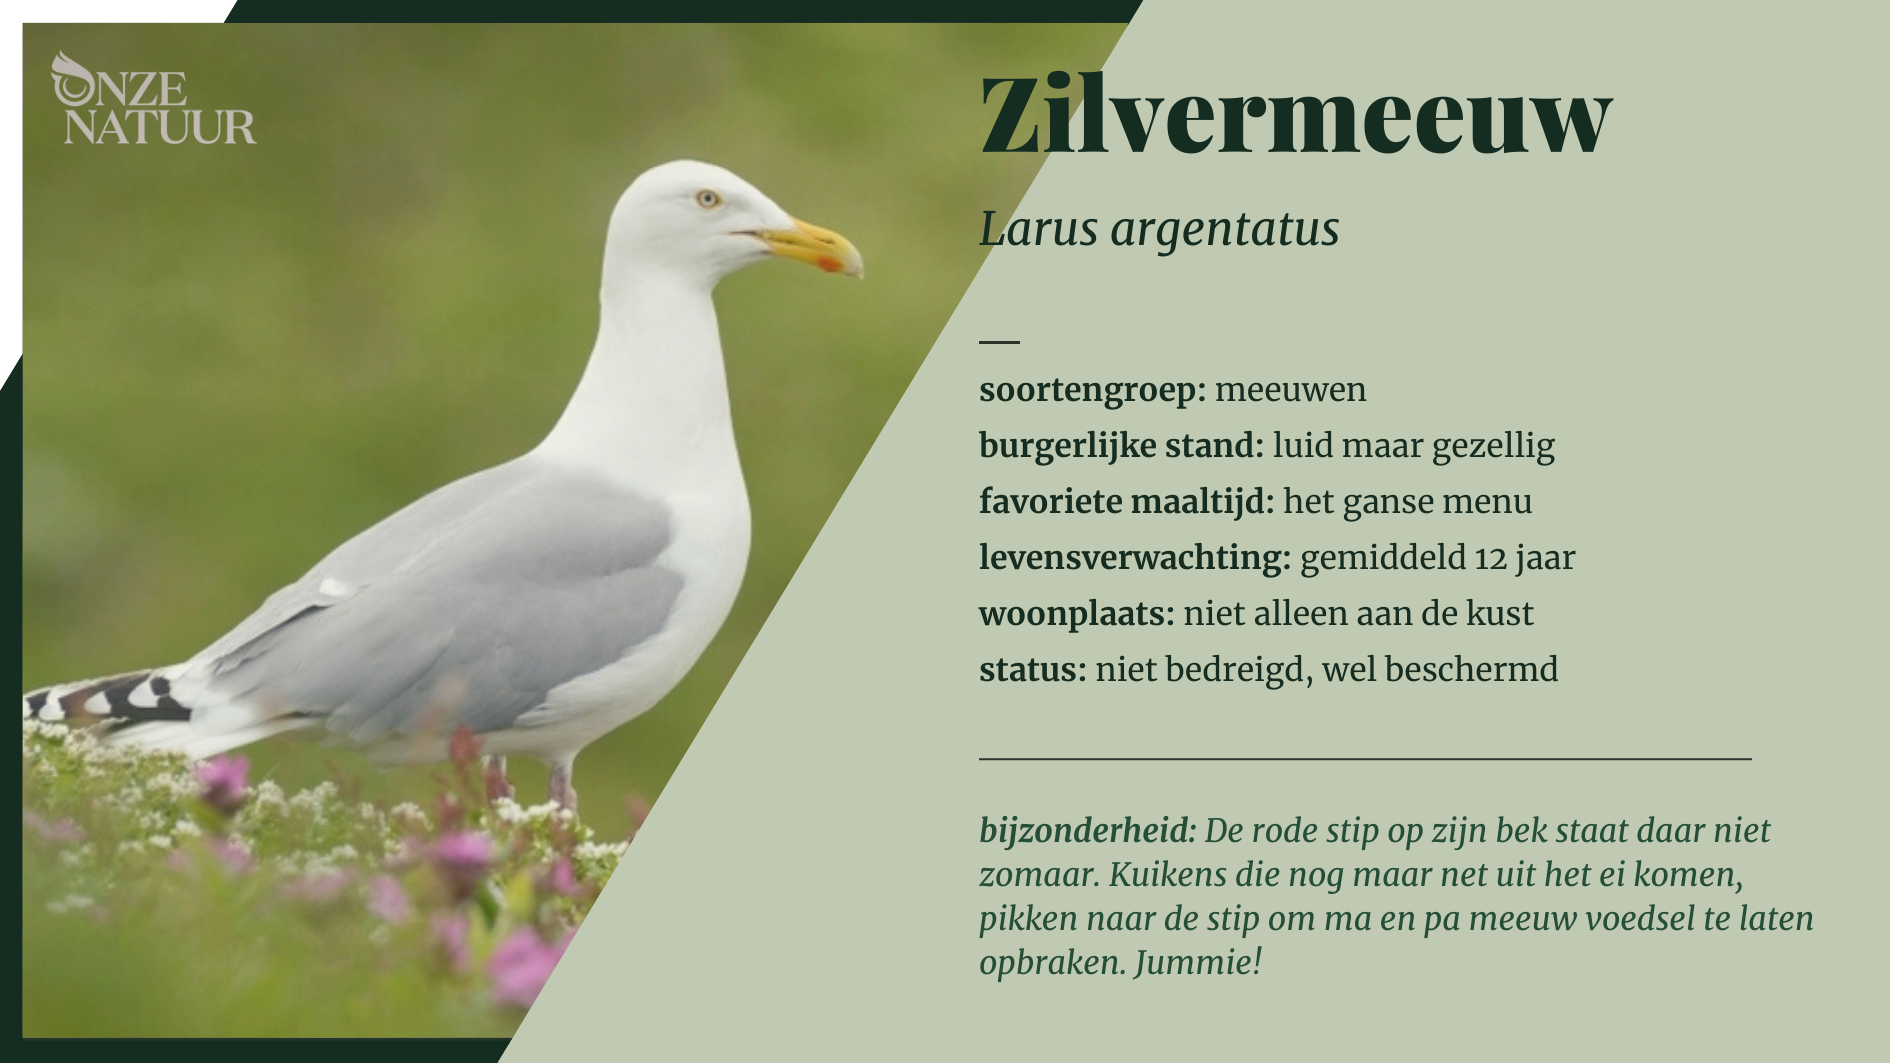 zilvermeeuw-nl.png